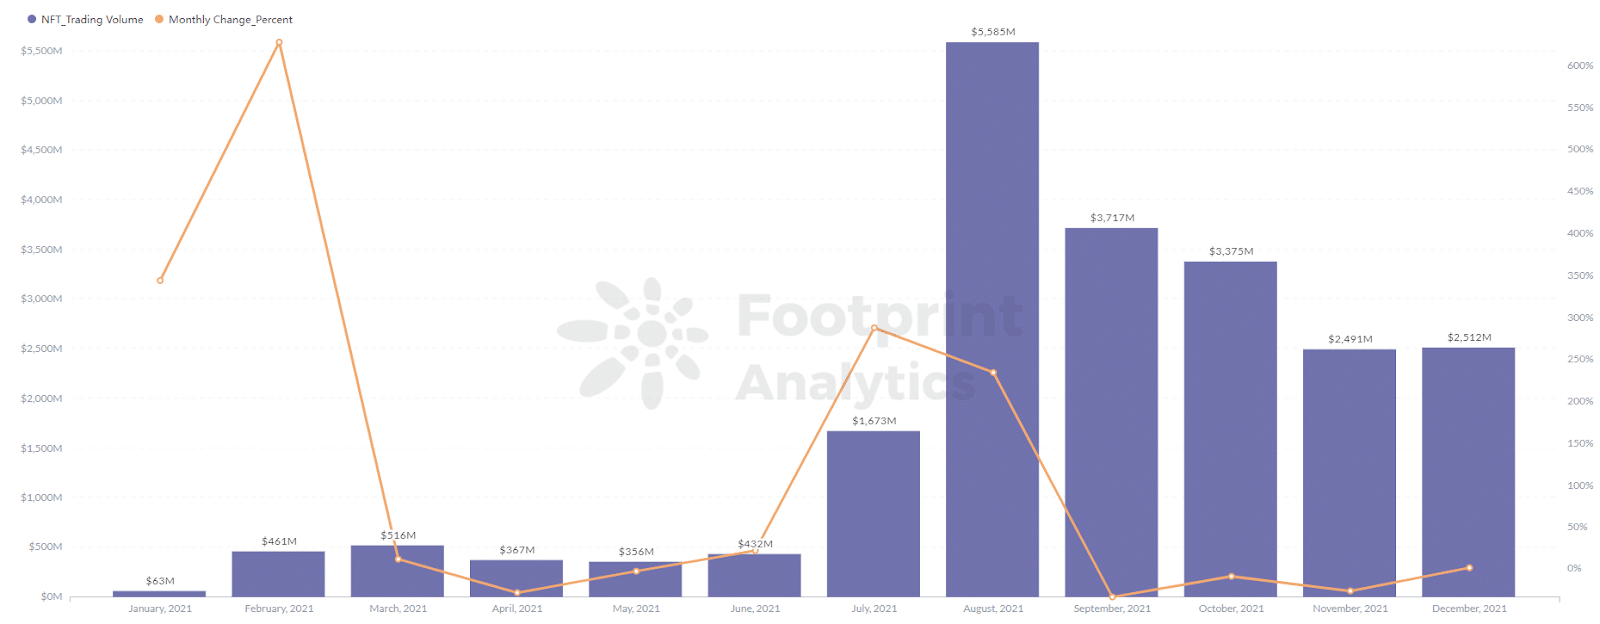 Footprint Analytics - Търговският обем на NFT проектите достигна връх от 5,586 милиона през август